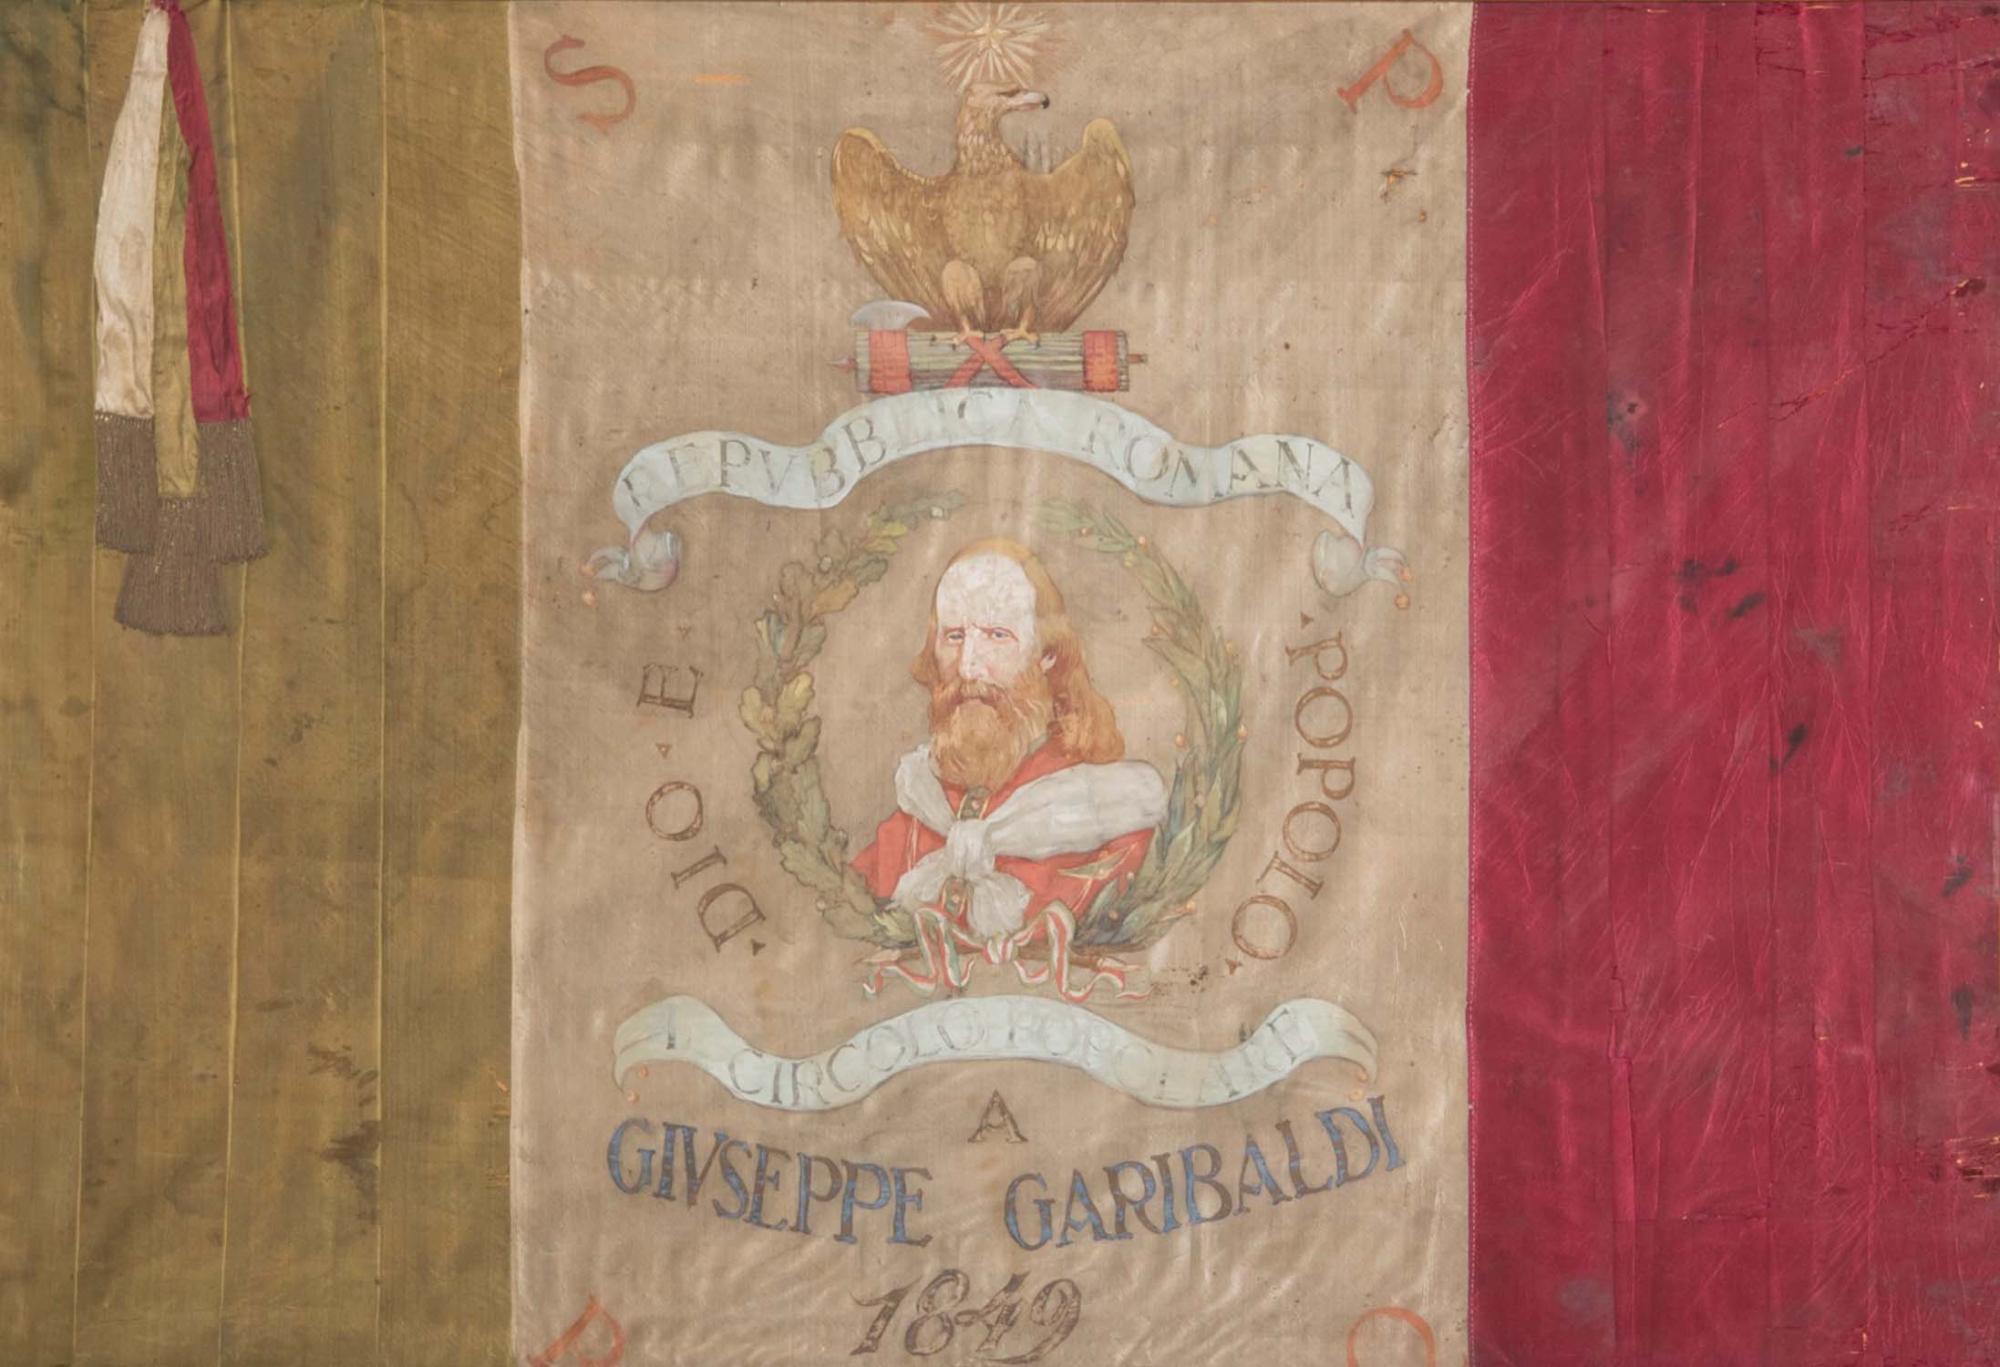 Bandiera della Repubblica romana del 1849